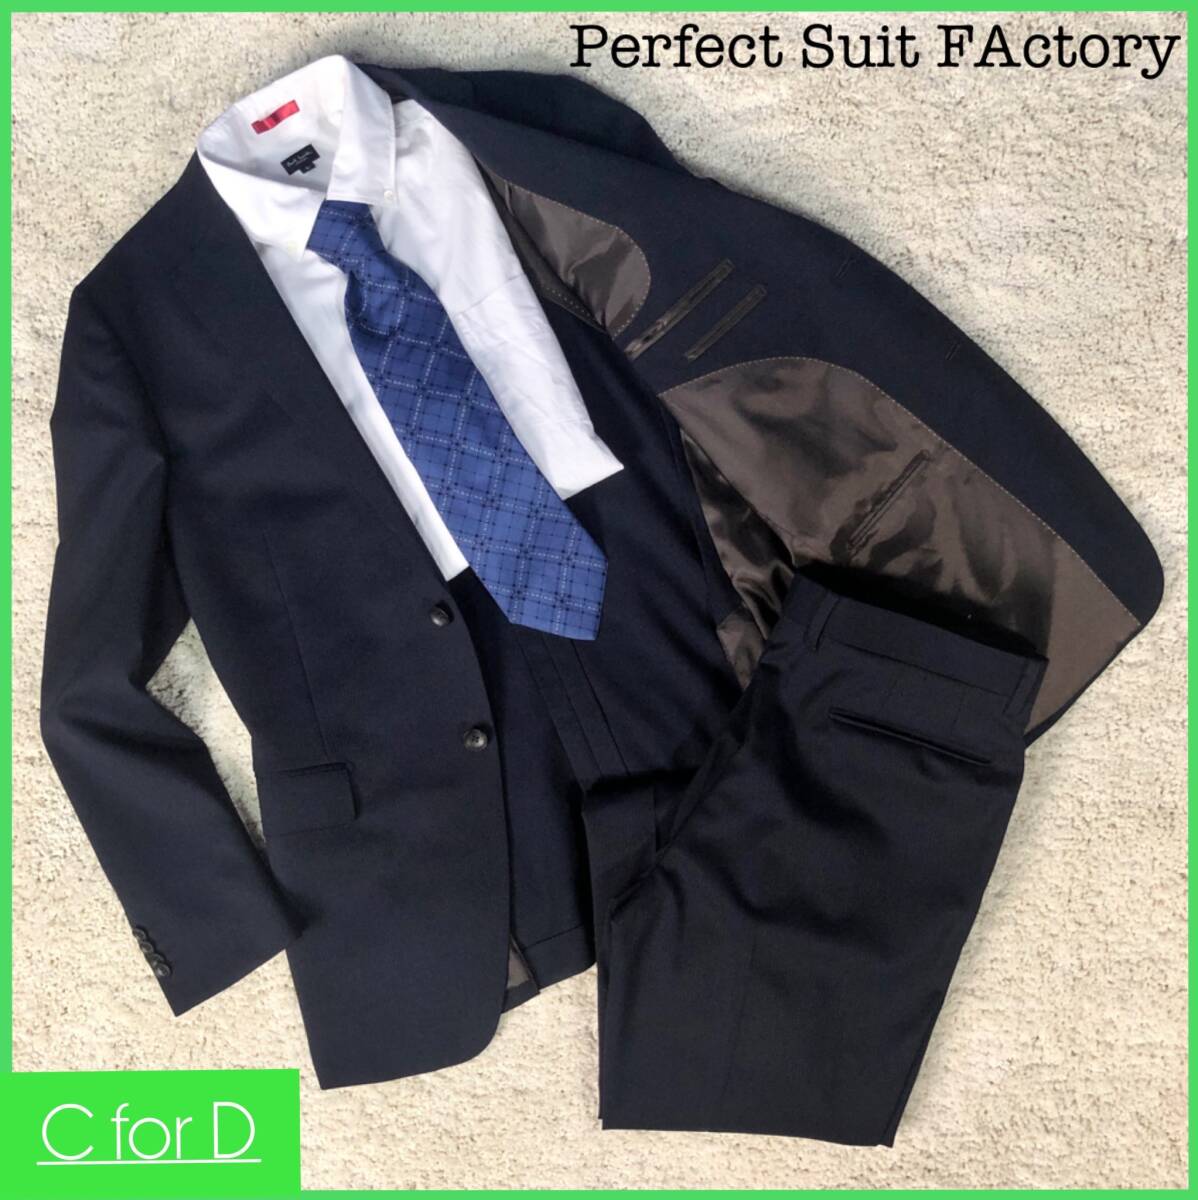 美品★Perfect Suit FActory★A7(XLサイズ相当) パーフェクトスーツファクトリー メンズ 紺色 セットアップスーツ ストライプ 背抜き J127